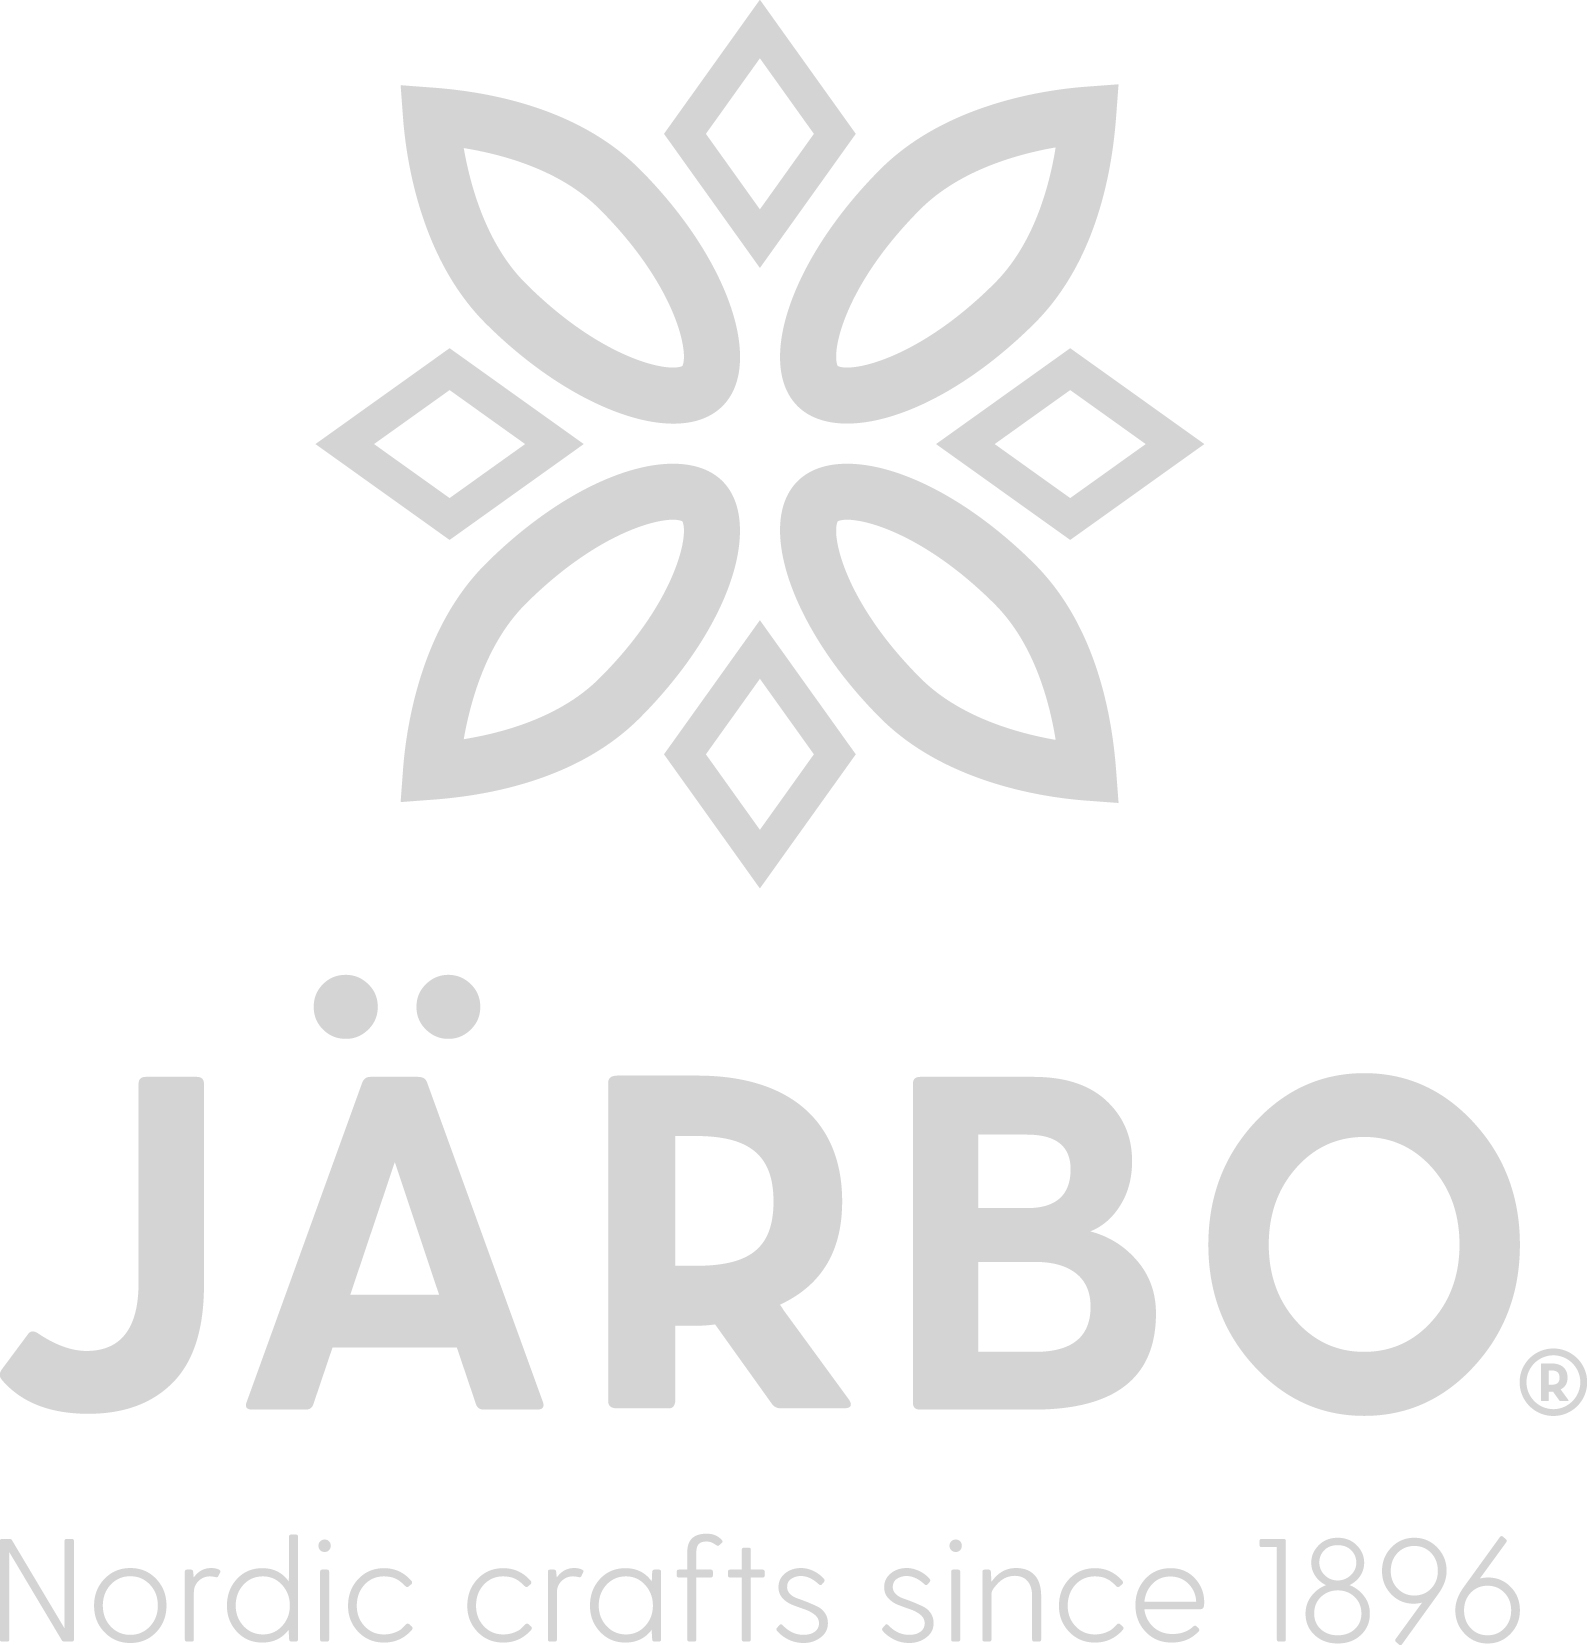 Stickmått med linjal från Järbo